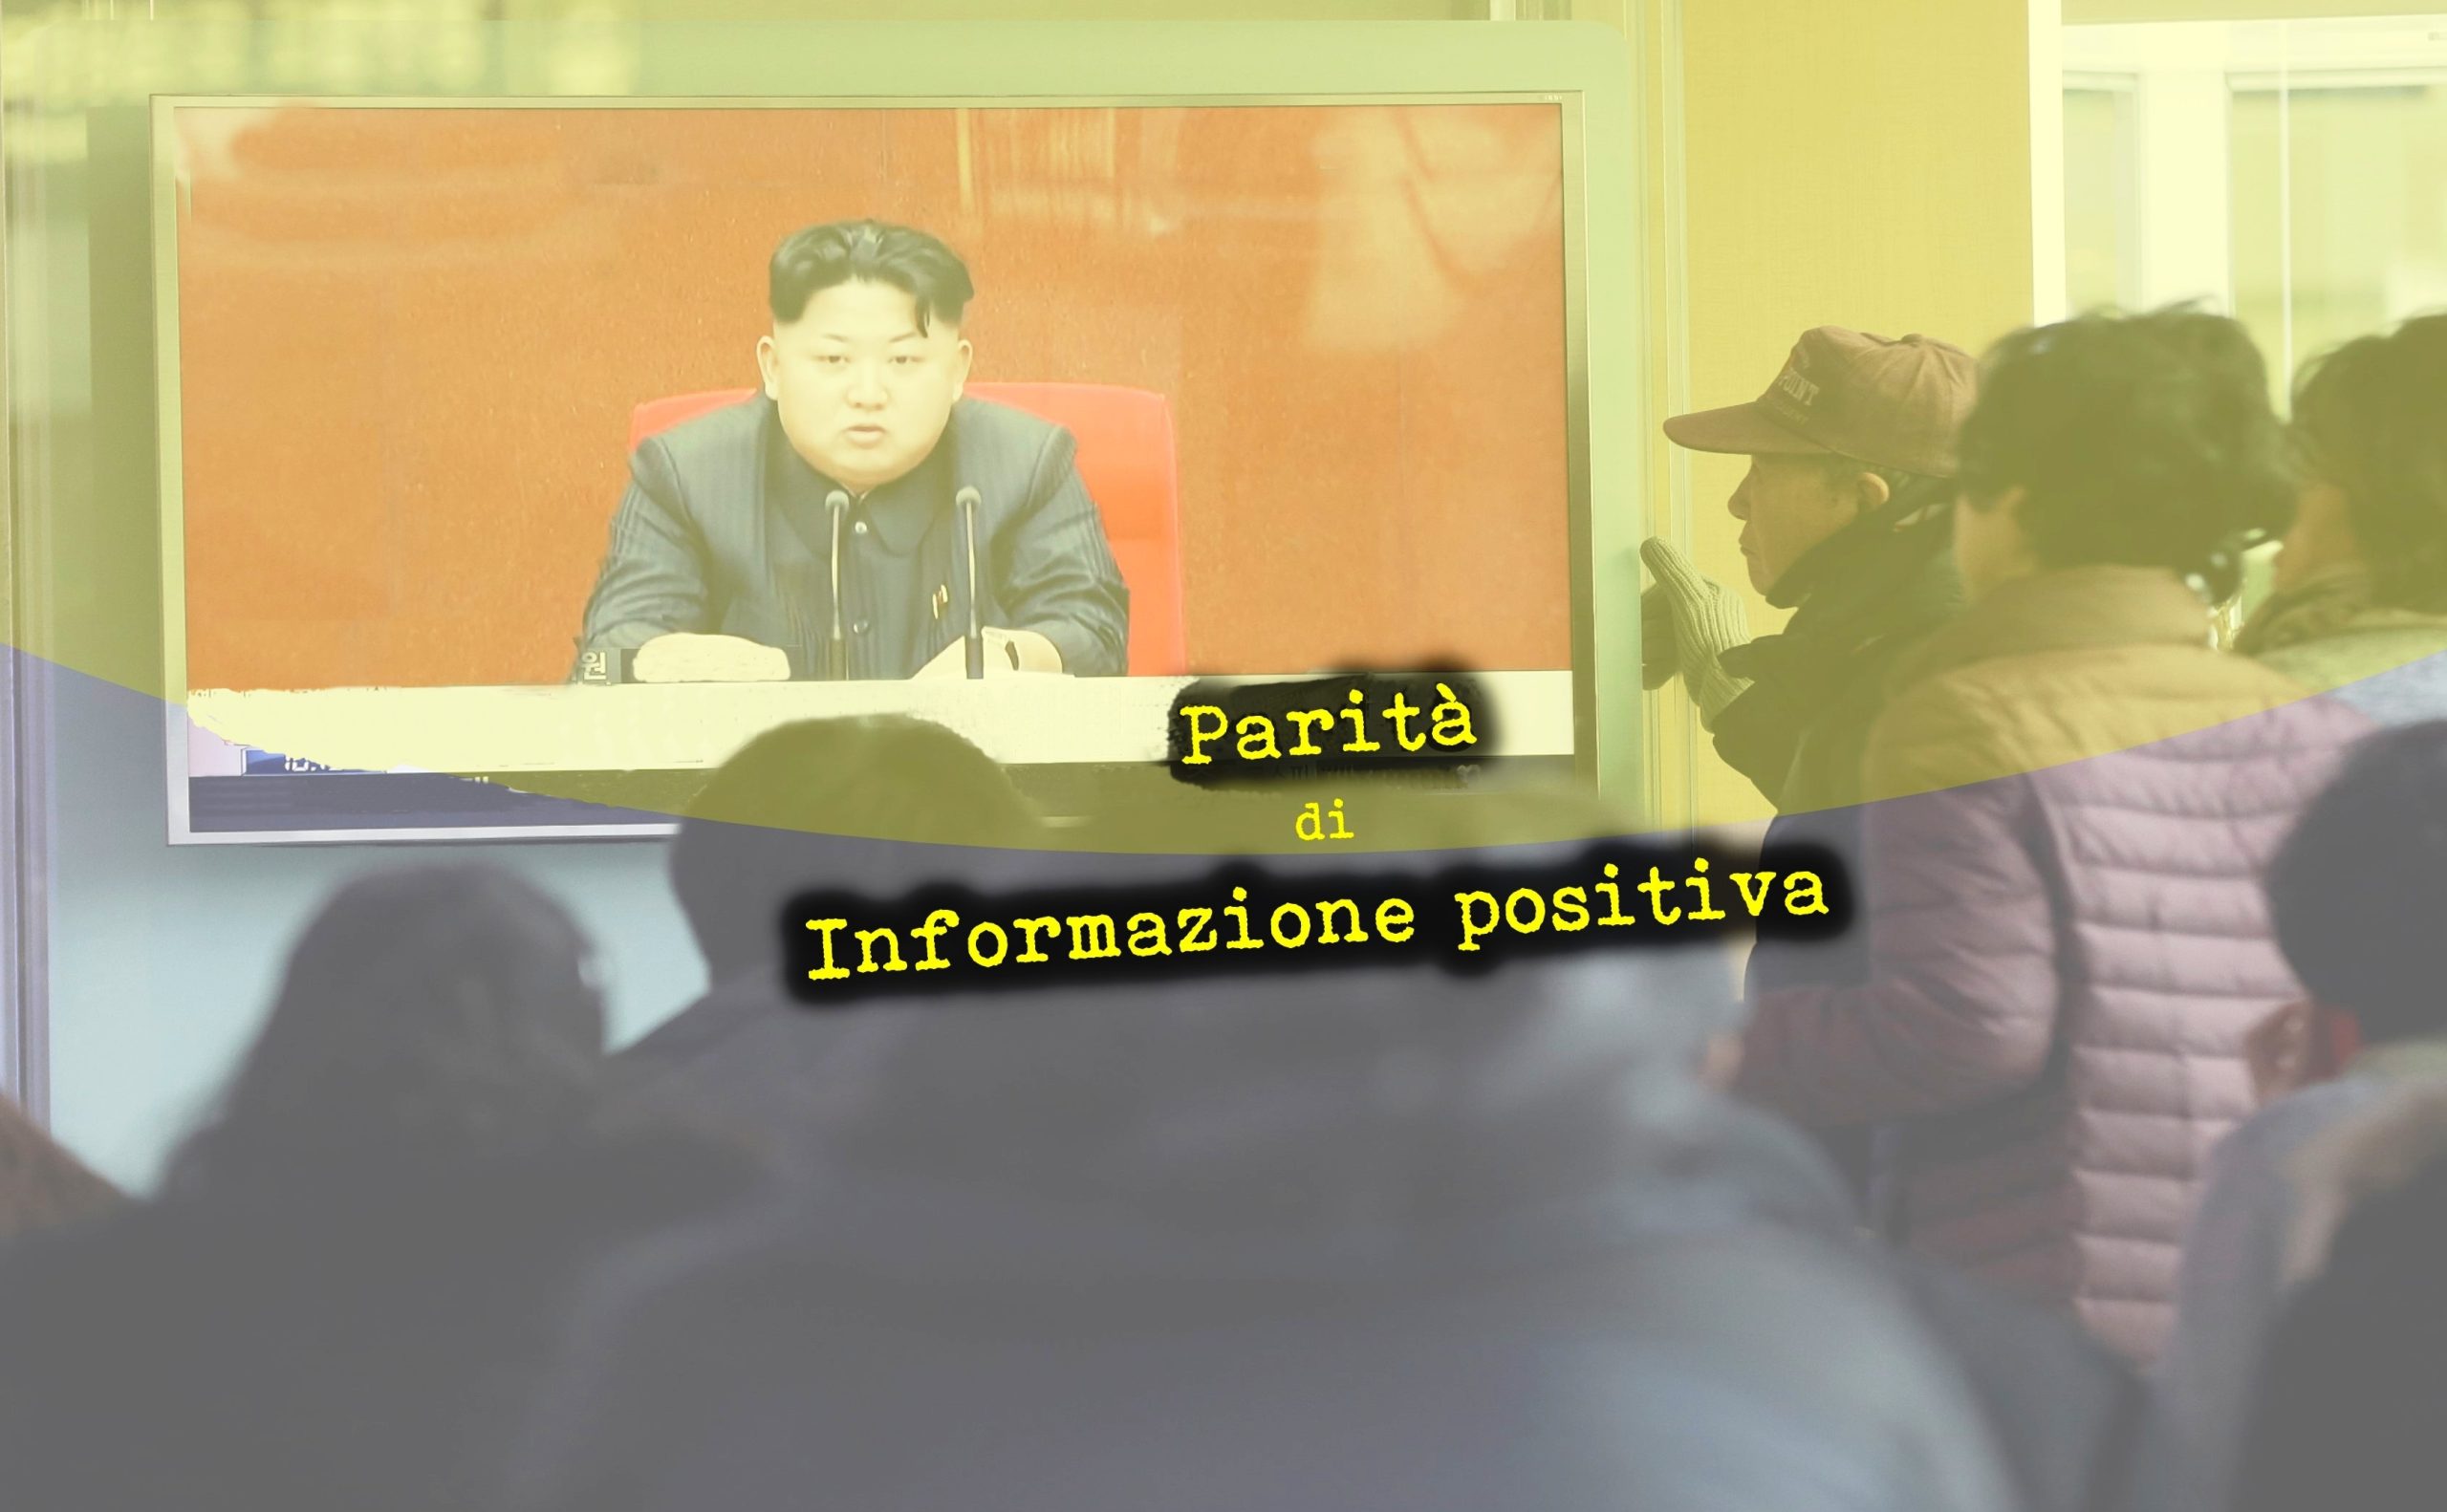 parità di informazione positiva – kim jong fewtext